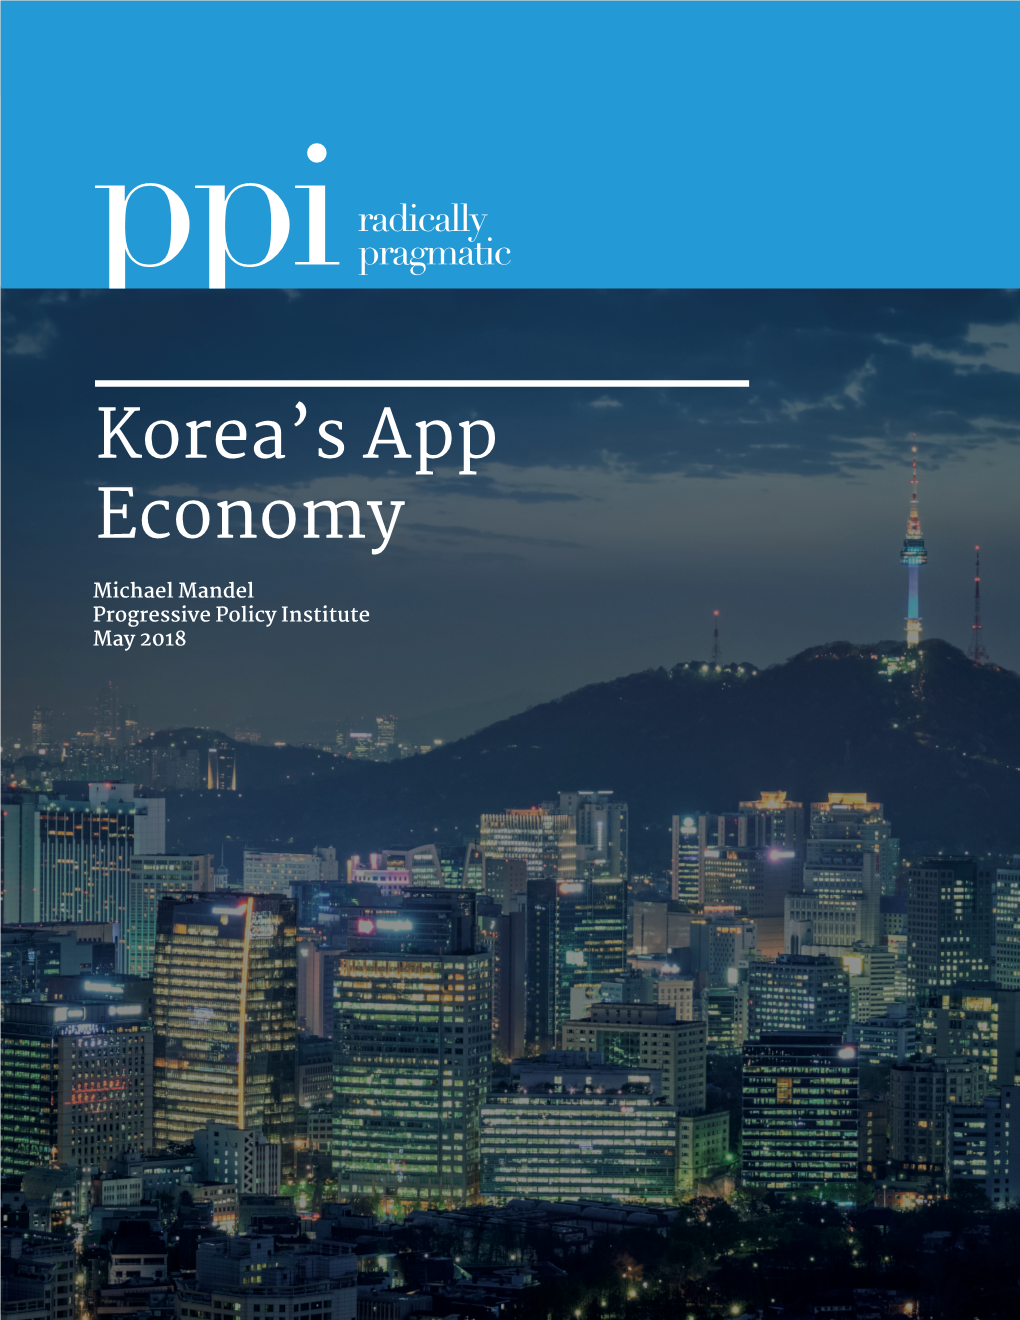 Korea's App Economy